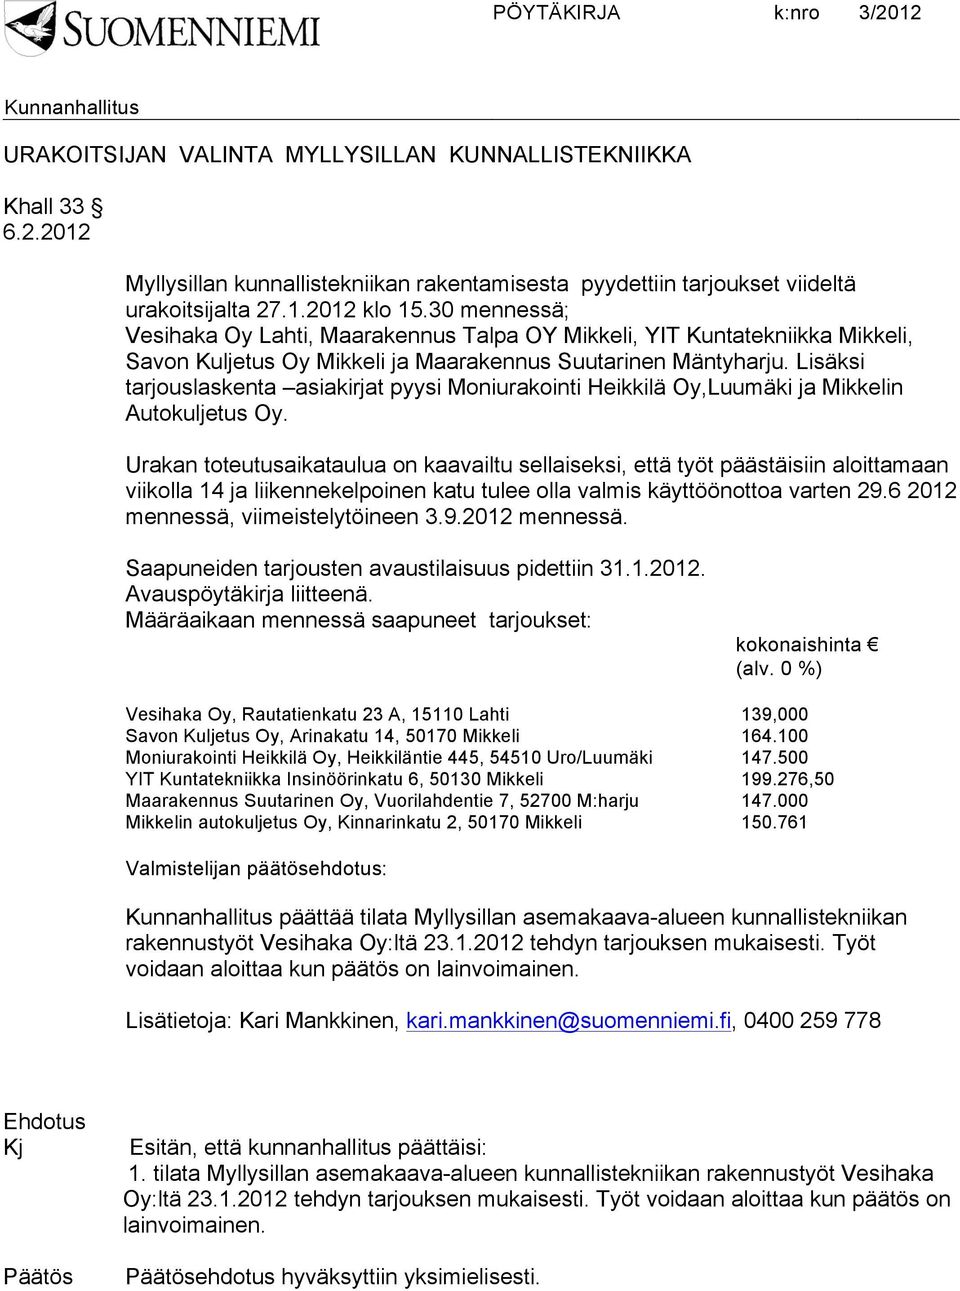 Lisäksi tarjouslaskenta asiakirjat pyysi Moniurakointi Heikkilä Oy,Luumäki ja Mikkelin Autokuljetus Oy.